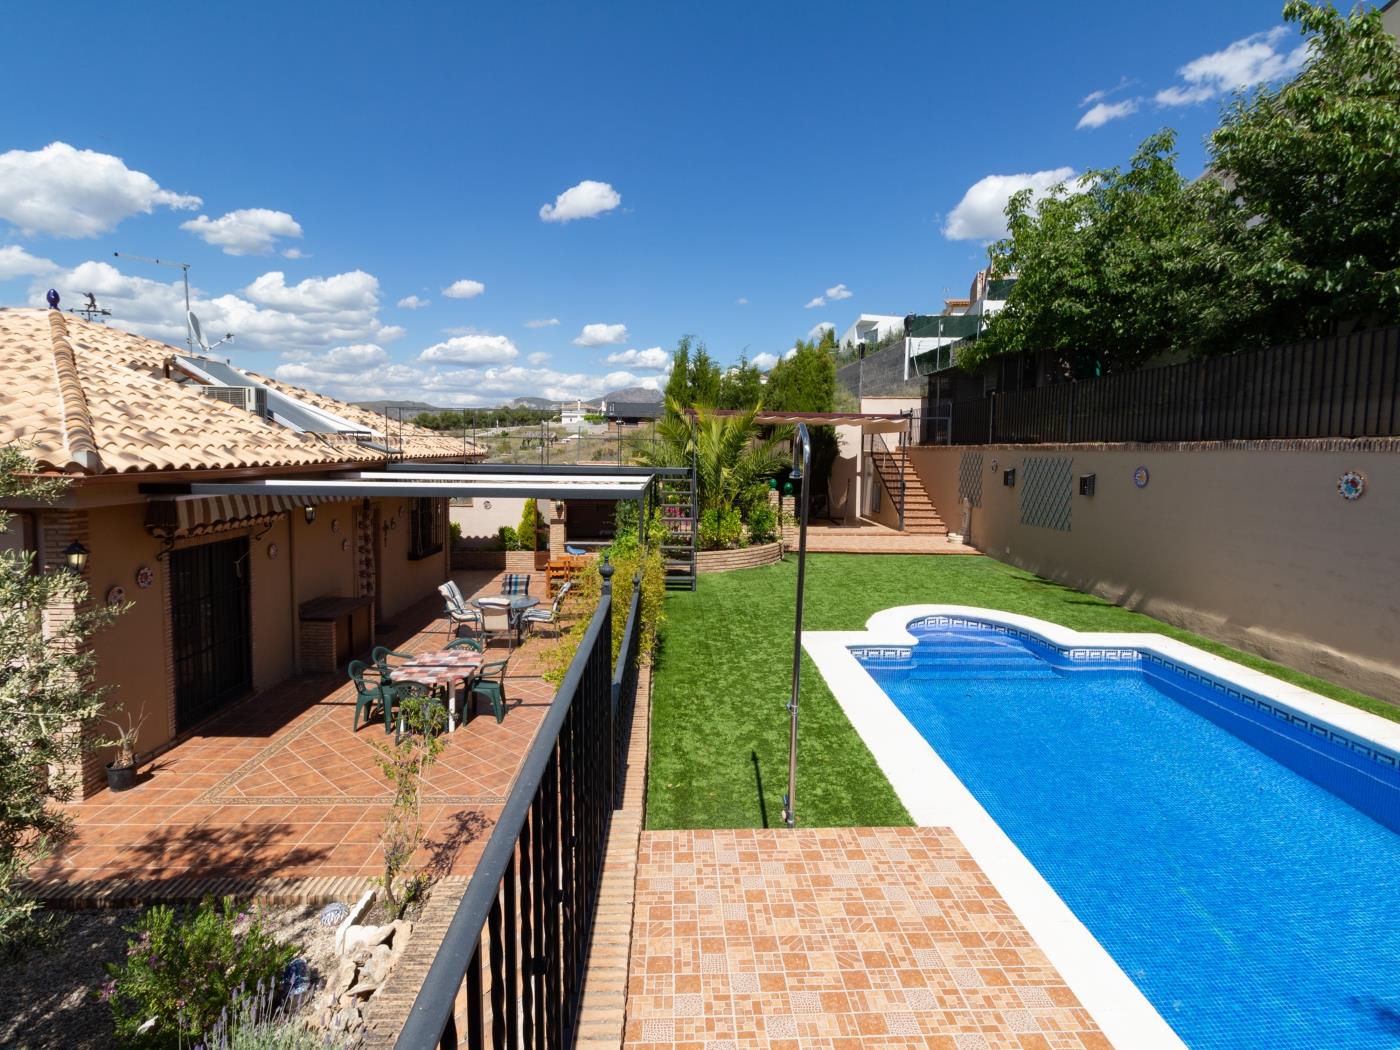 Maison avec piscine et Wi-Fi gratuit à La Zubia